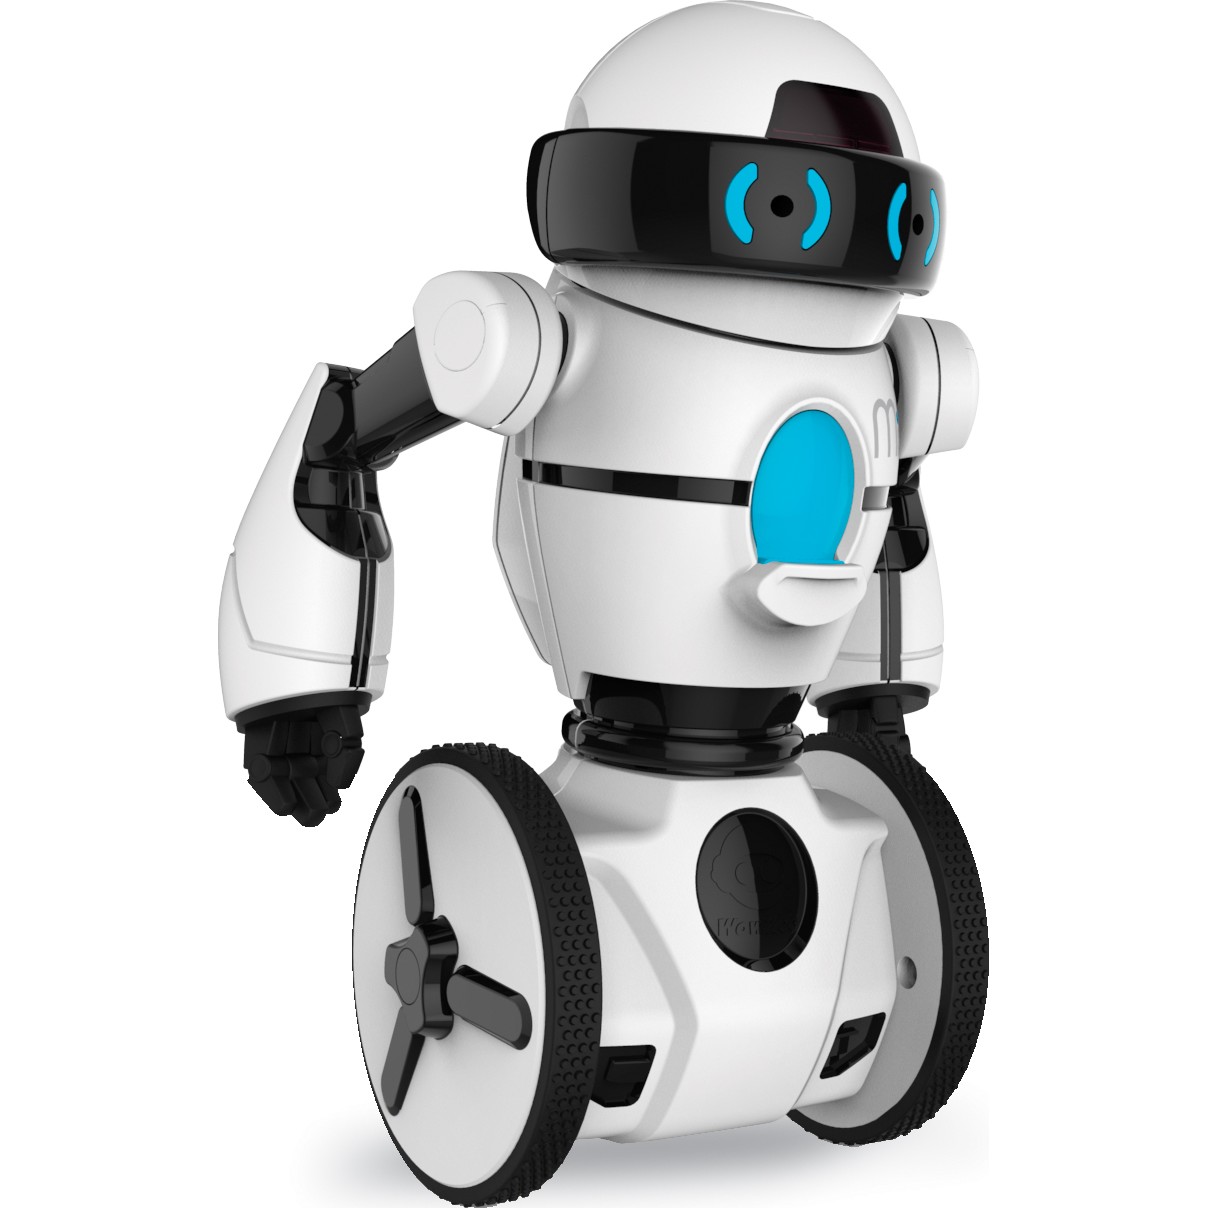 kommando Rend Hændelse, begivenhed Buy WowWee MiP White Robot on Robot Advance